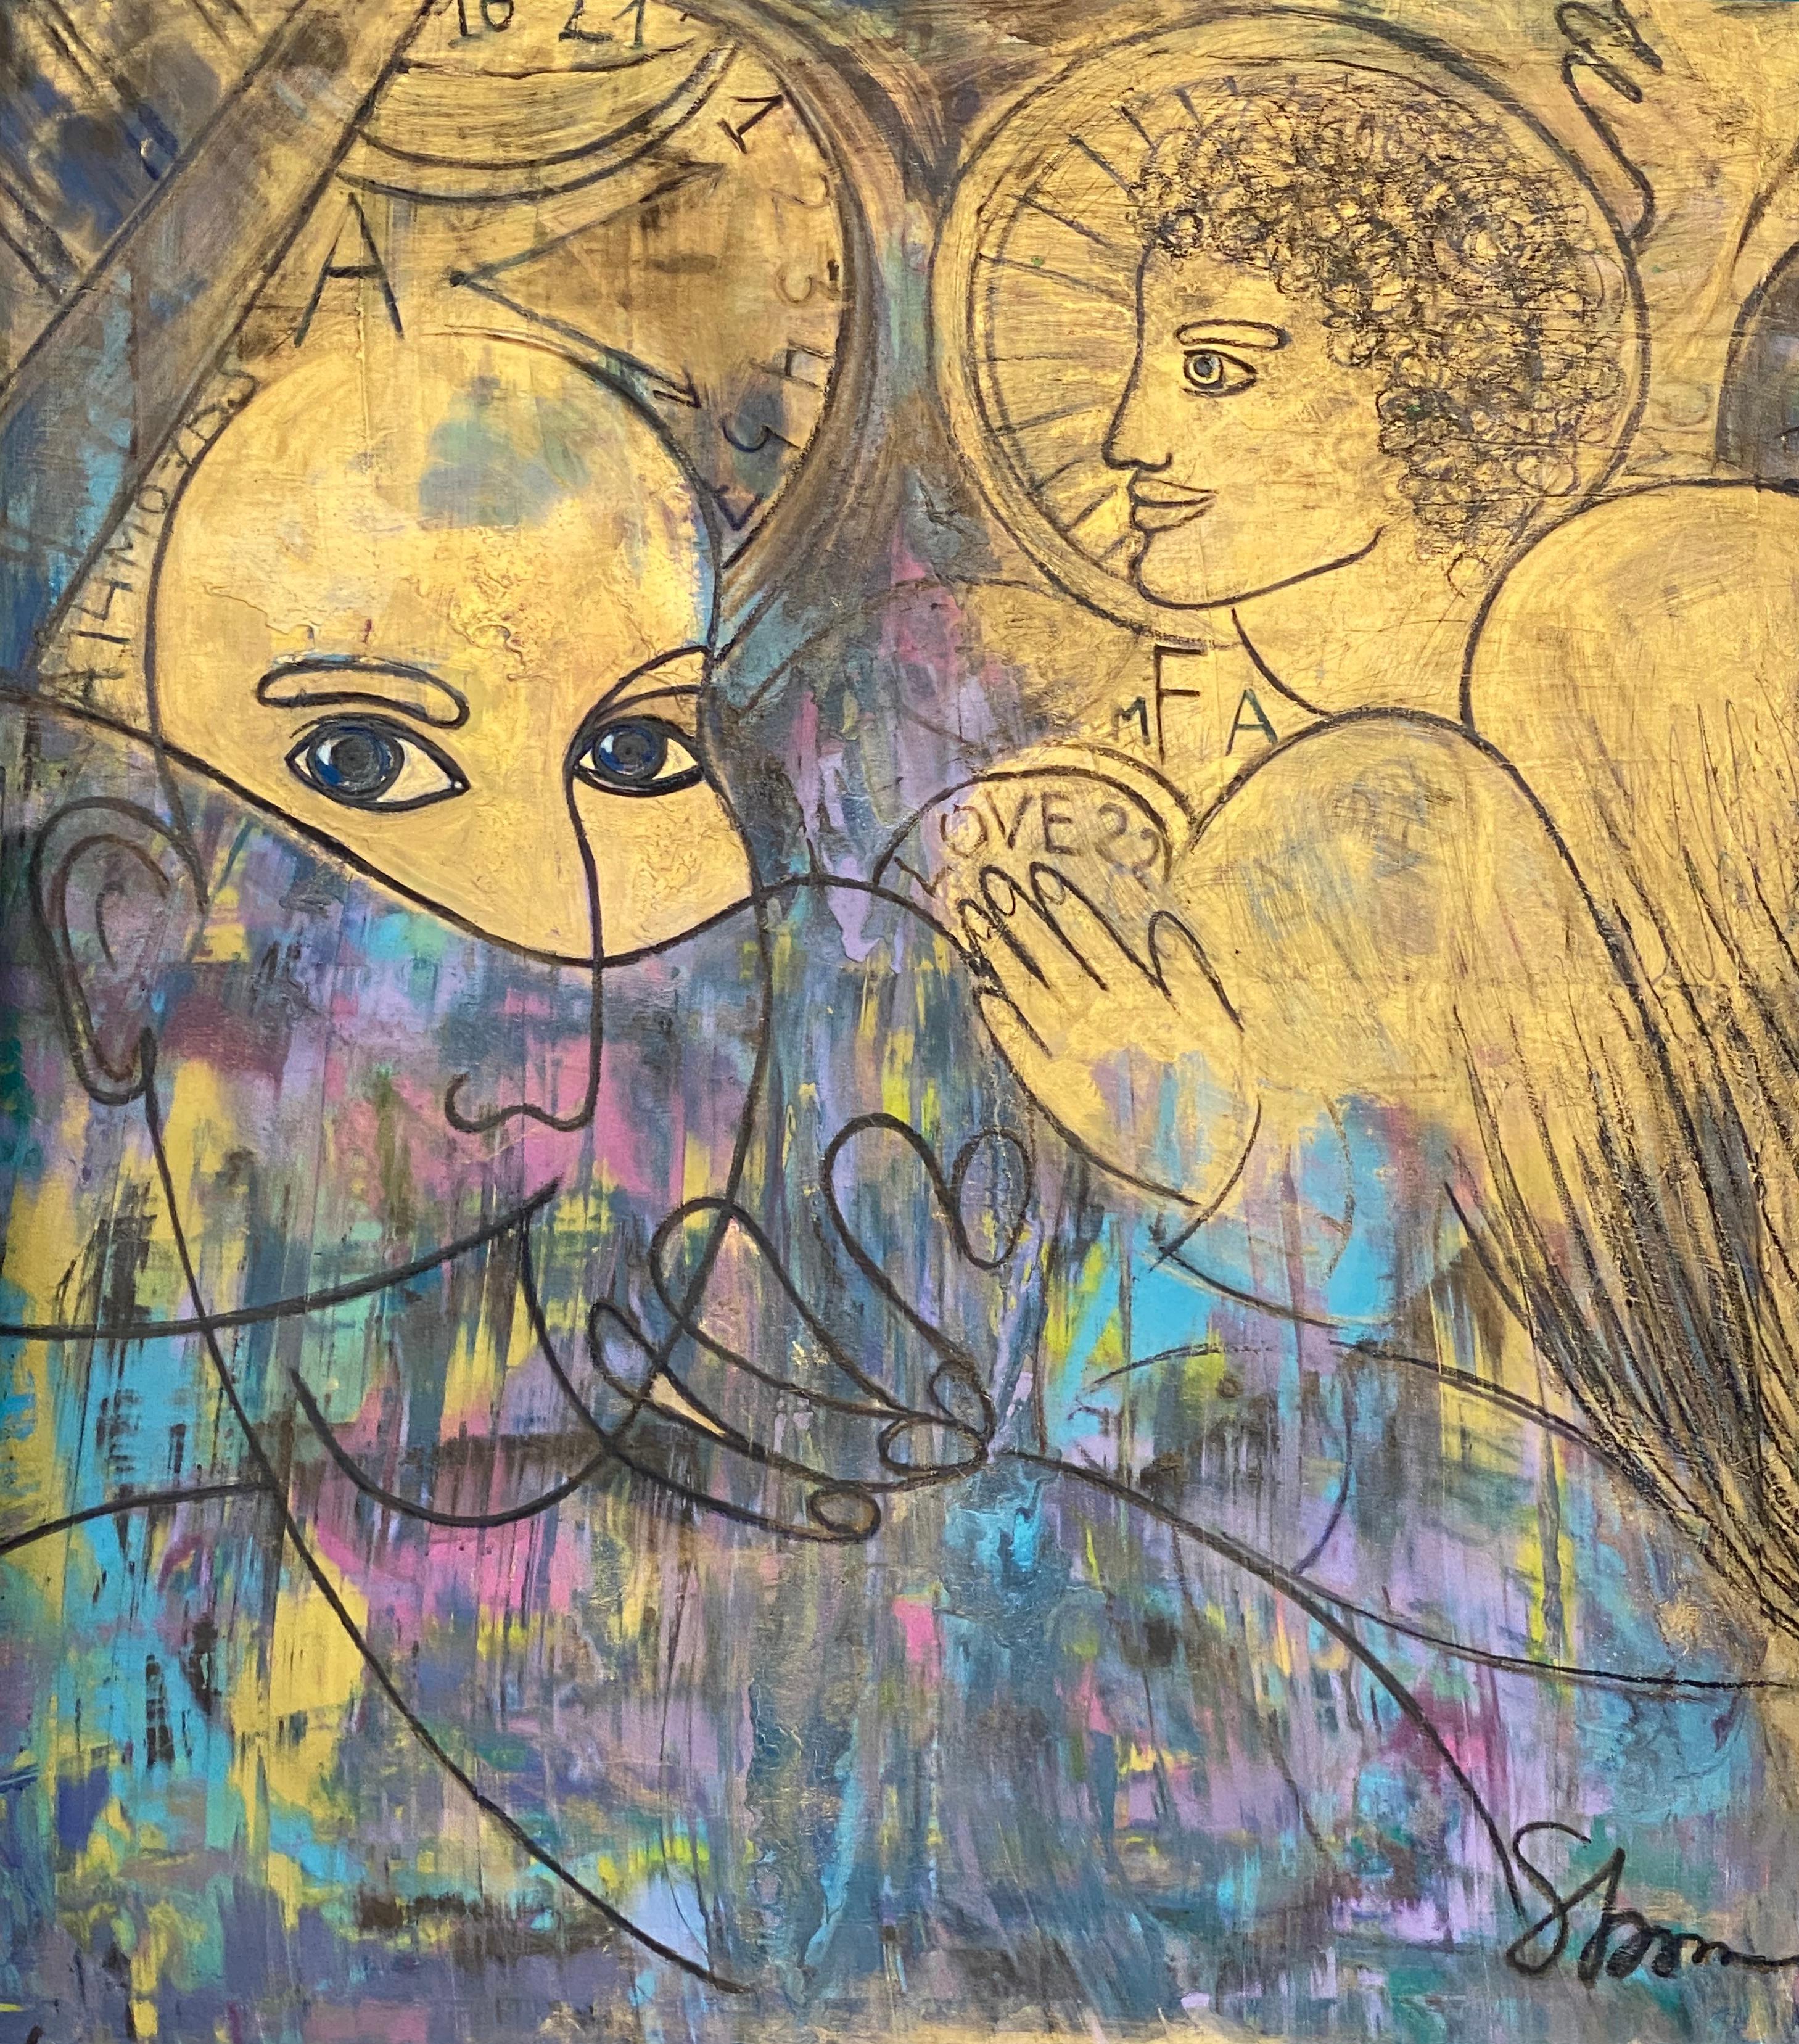 Abstraktes Gemälde „GOLDEN ANGEL“ 65" x 62,5" Zoll von TOMA STENKO

In Toma Stenkos kraftvollen, oft großformatigen Werken halten sich Bewegung und Stille, Farbe und Form die Waage. Es ist ein Streben danach, das Sichtbare im Unsichtbaren, das